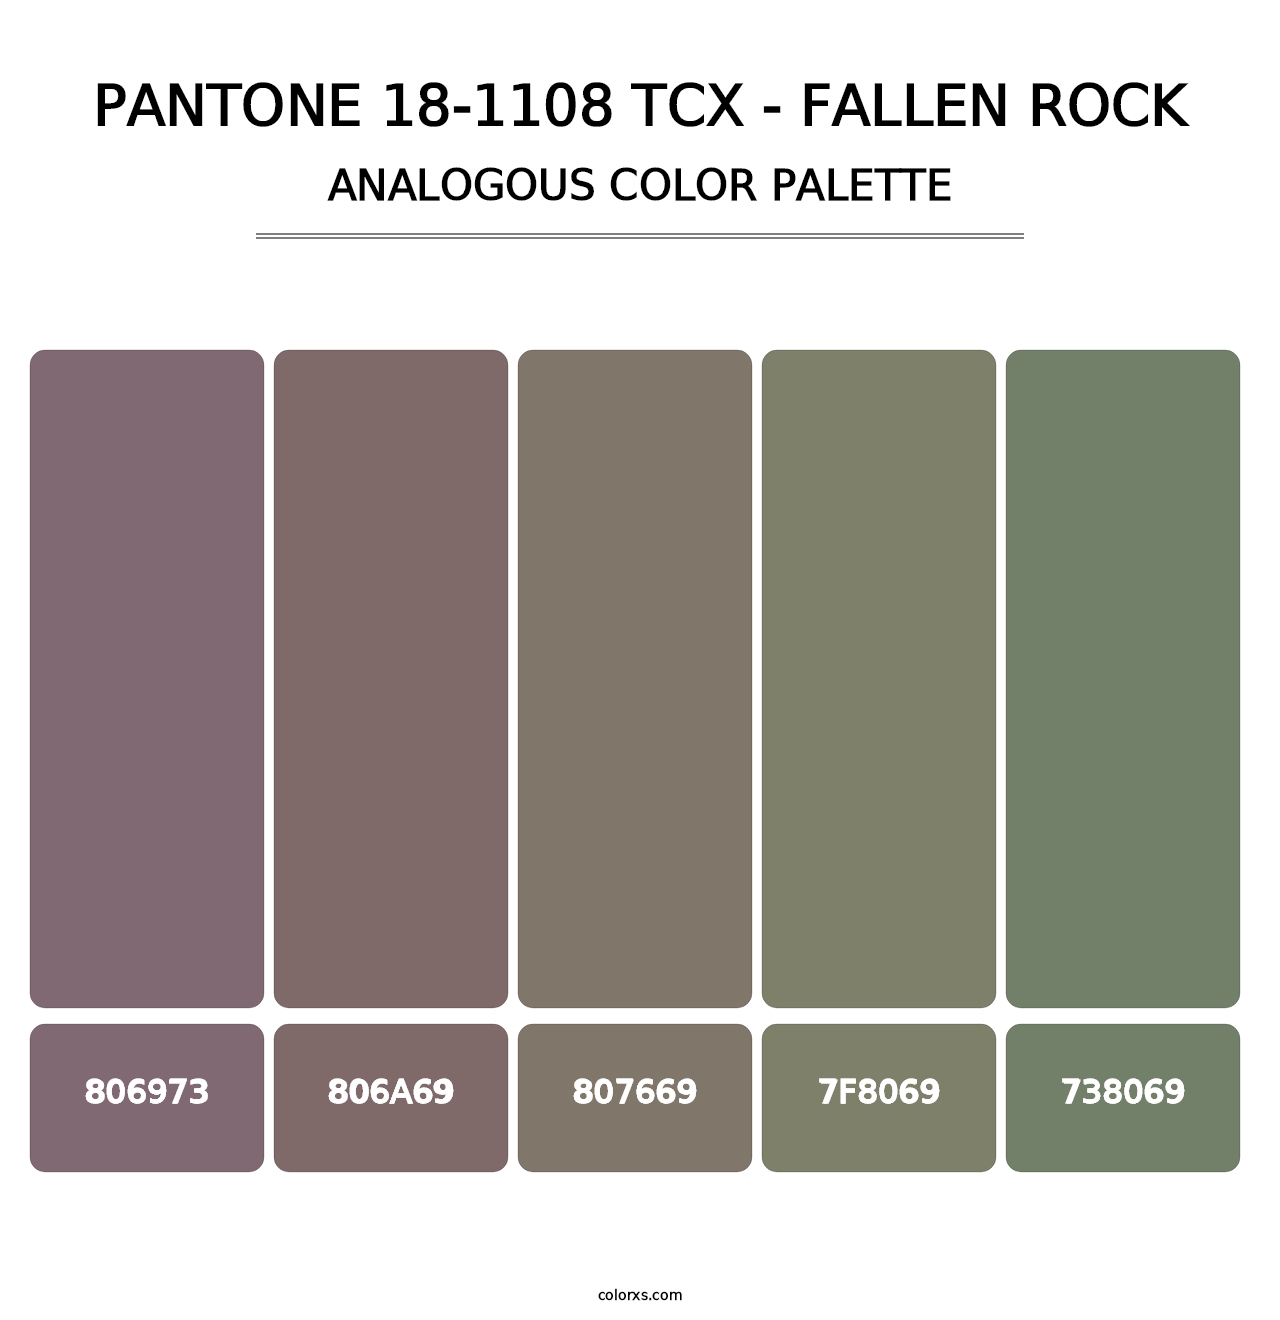 PANTONE 18-1108 TCX - Fallen Rock - Analogous Color Palette